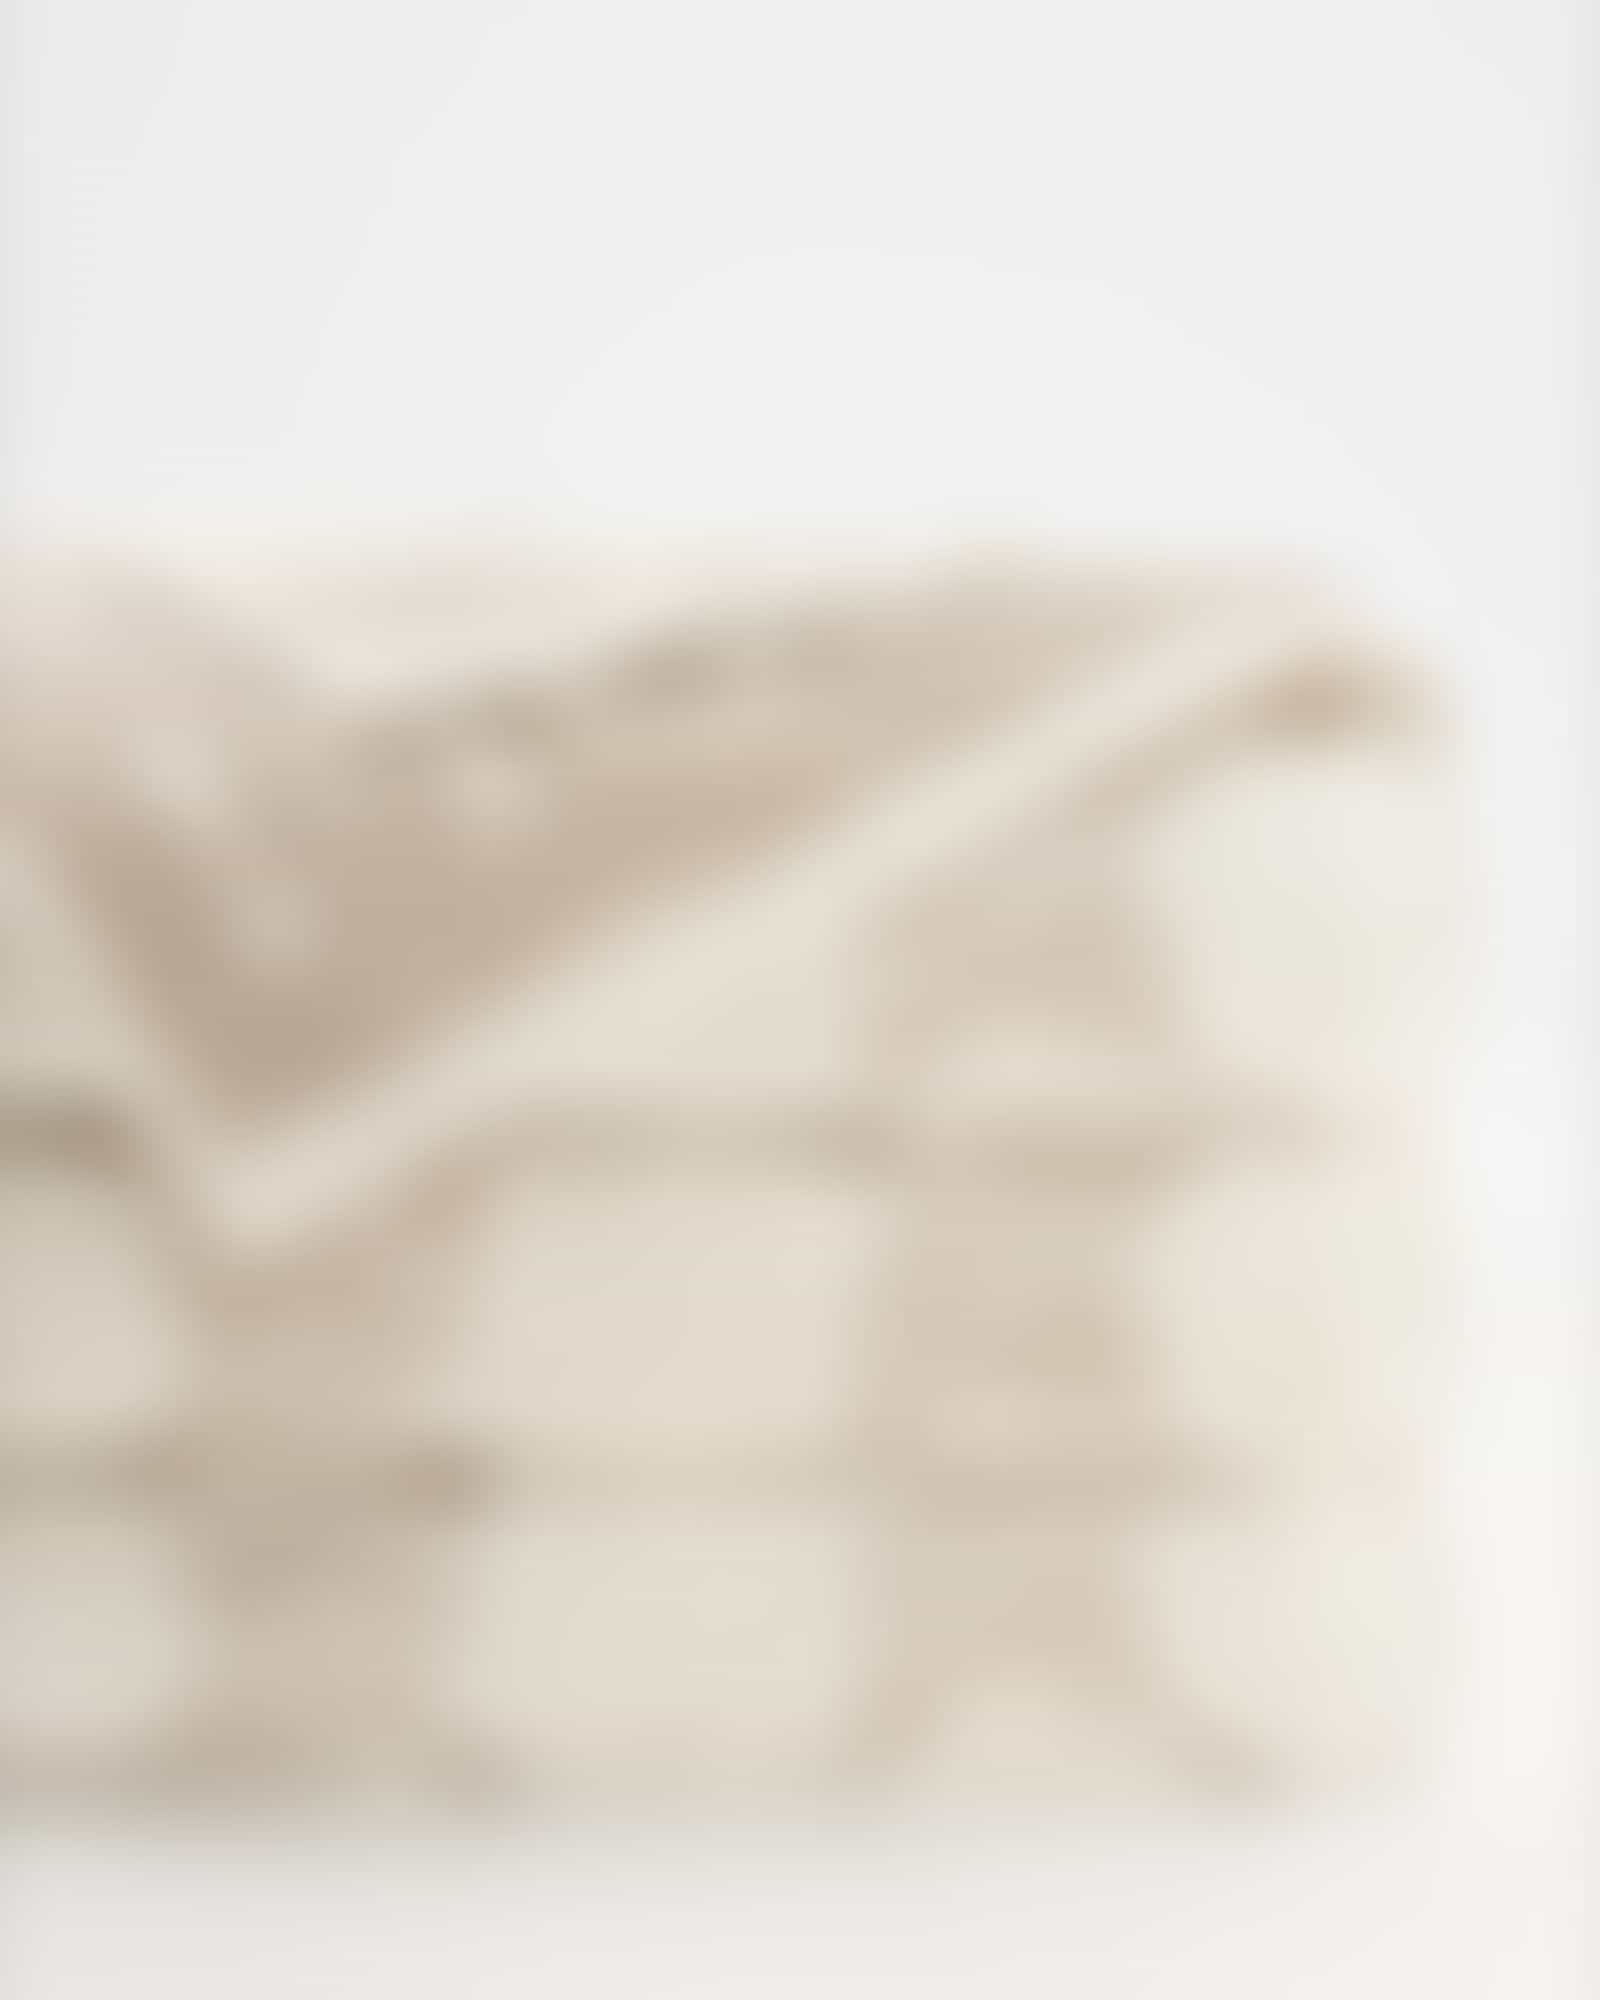 JOOP! Classic - Cornflower 1611 - Farbe: Creme - 36 - Waschhandschuh 16x22 cm Detailbild 2